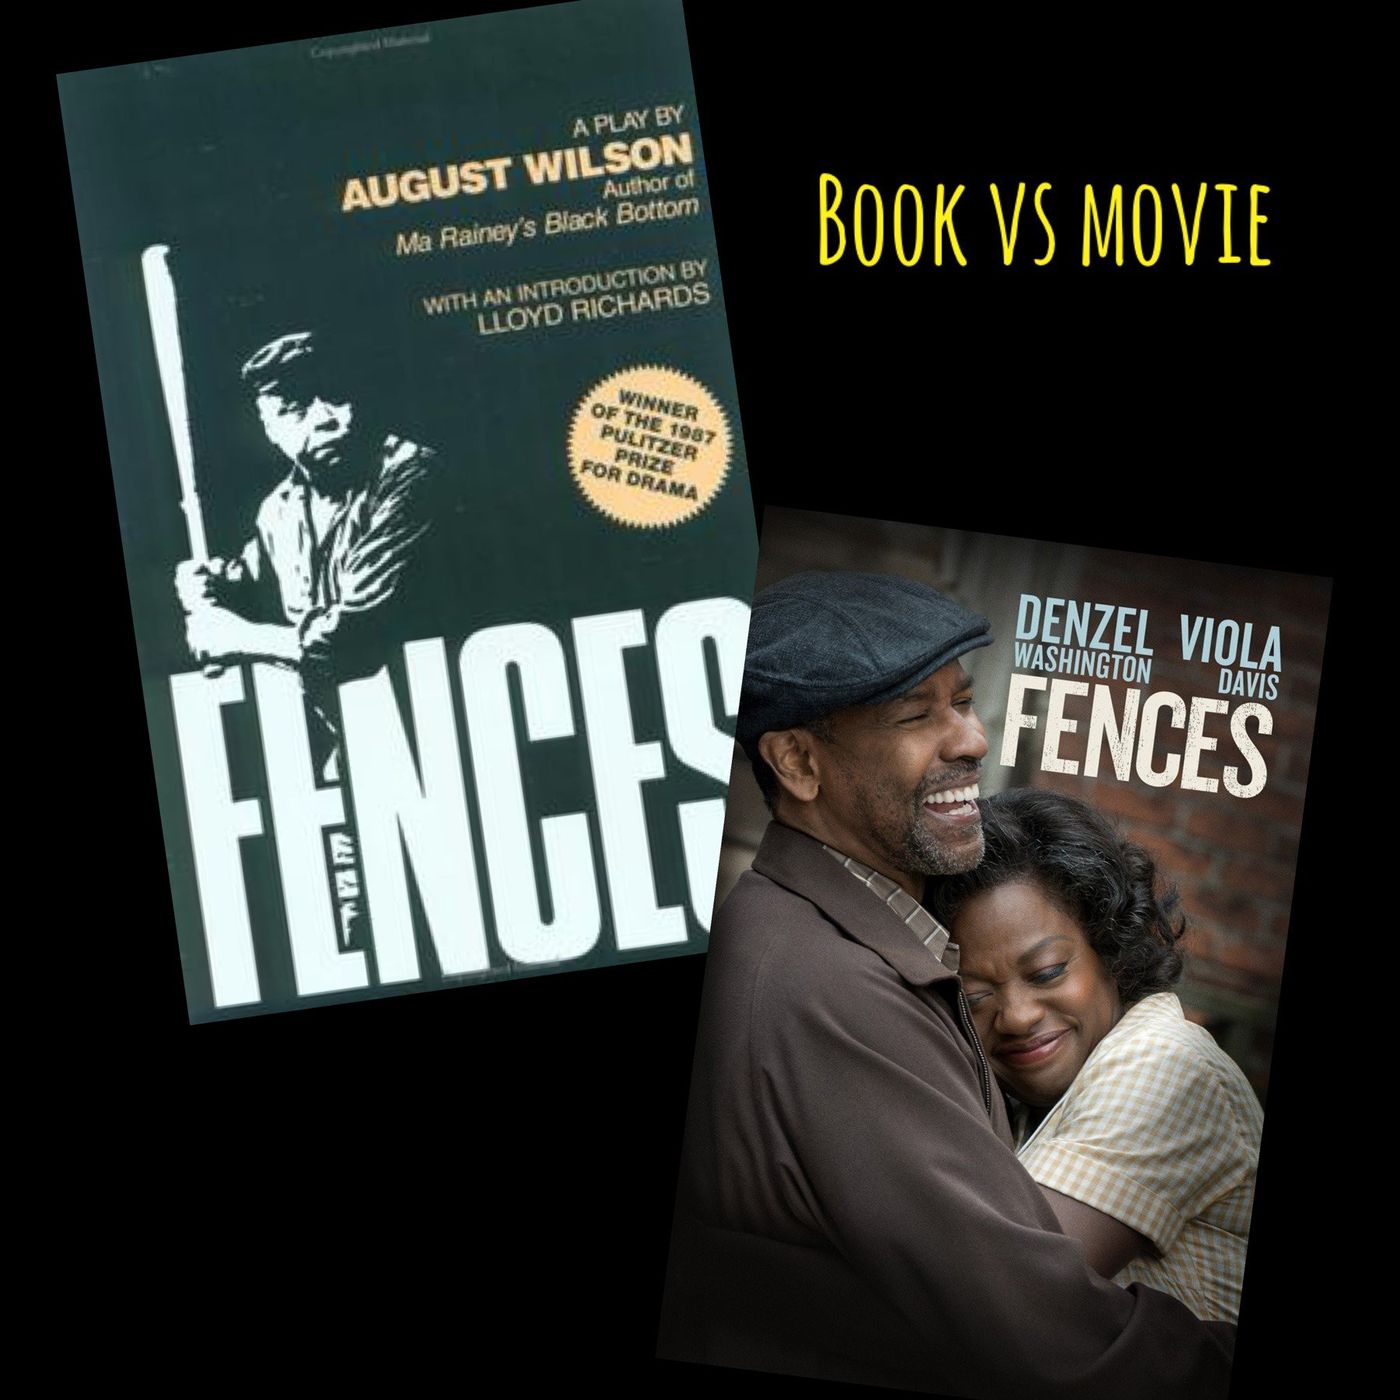 Fences(2016) Denzel Washington, Viola Davis, Stephen McKinley Henderson, Jovan Adepo, & August Wilson